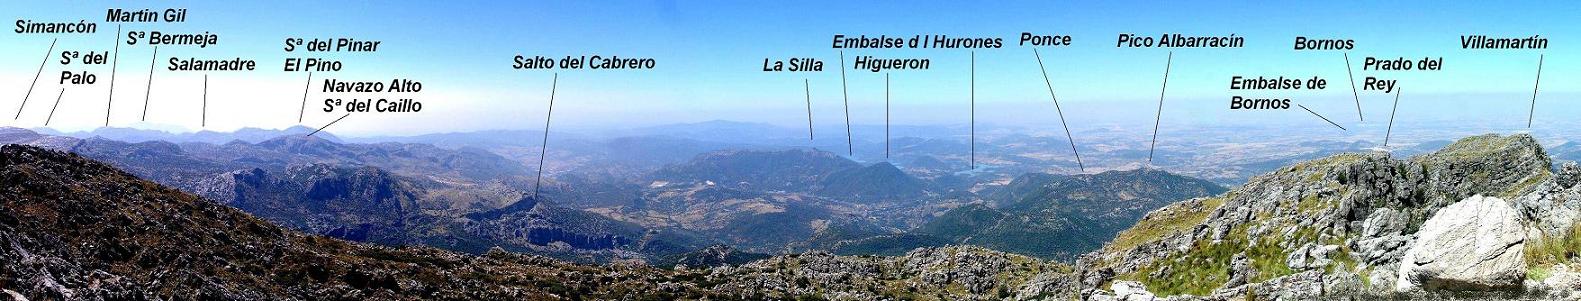 Panorámica desde El Torreón  hacia La Silla y  Sª Albarracín año 2010.jpg